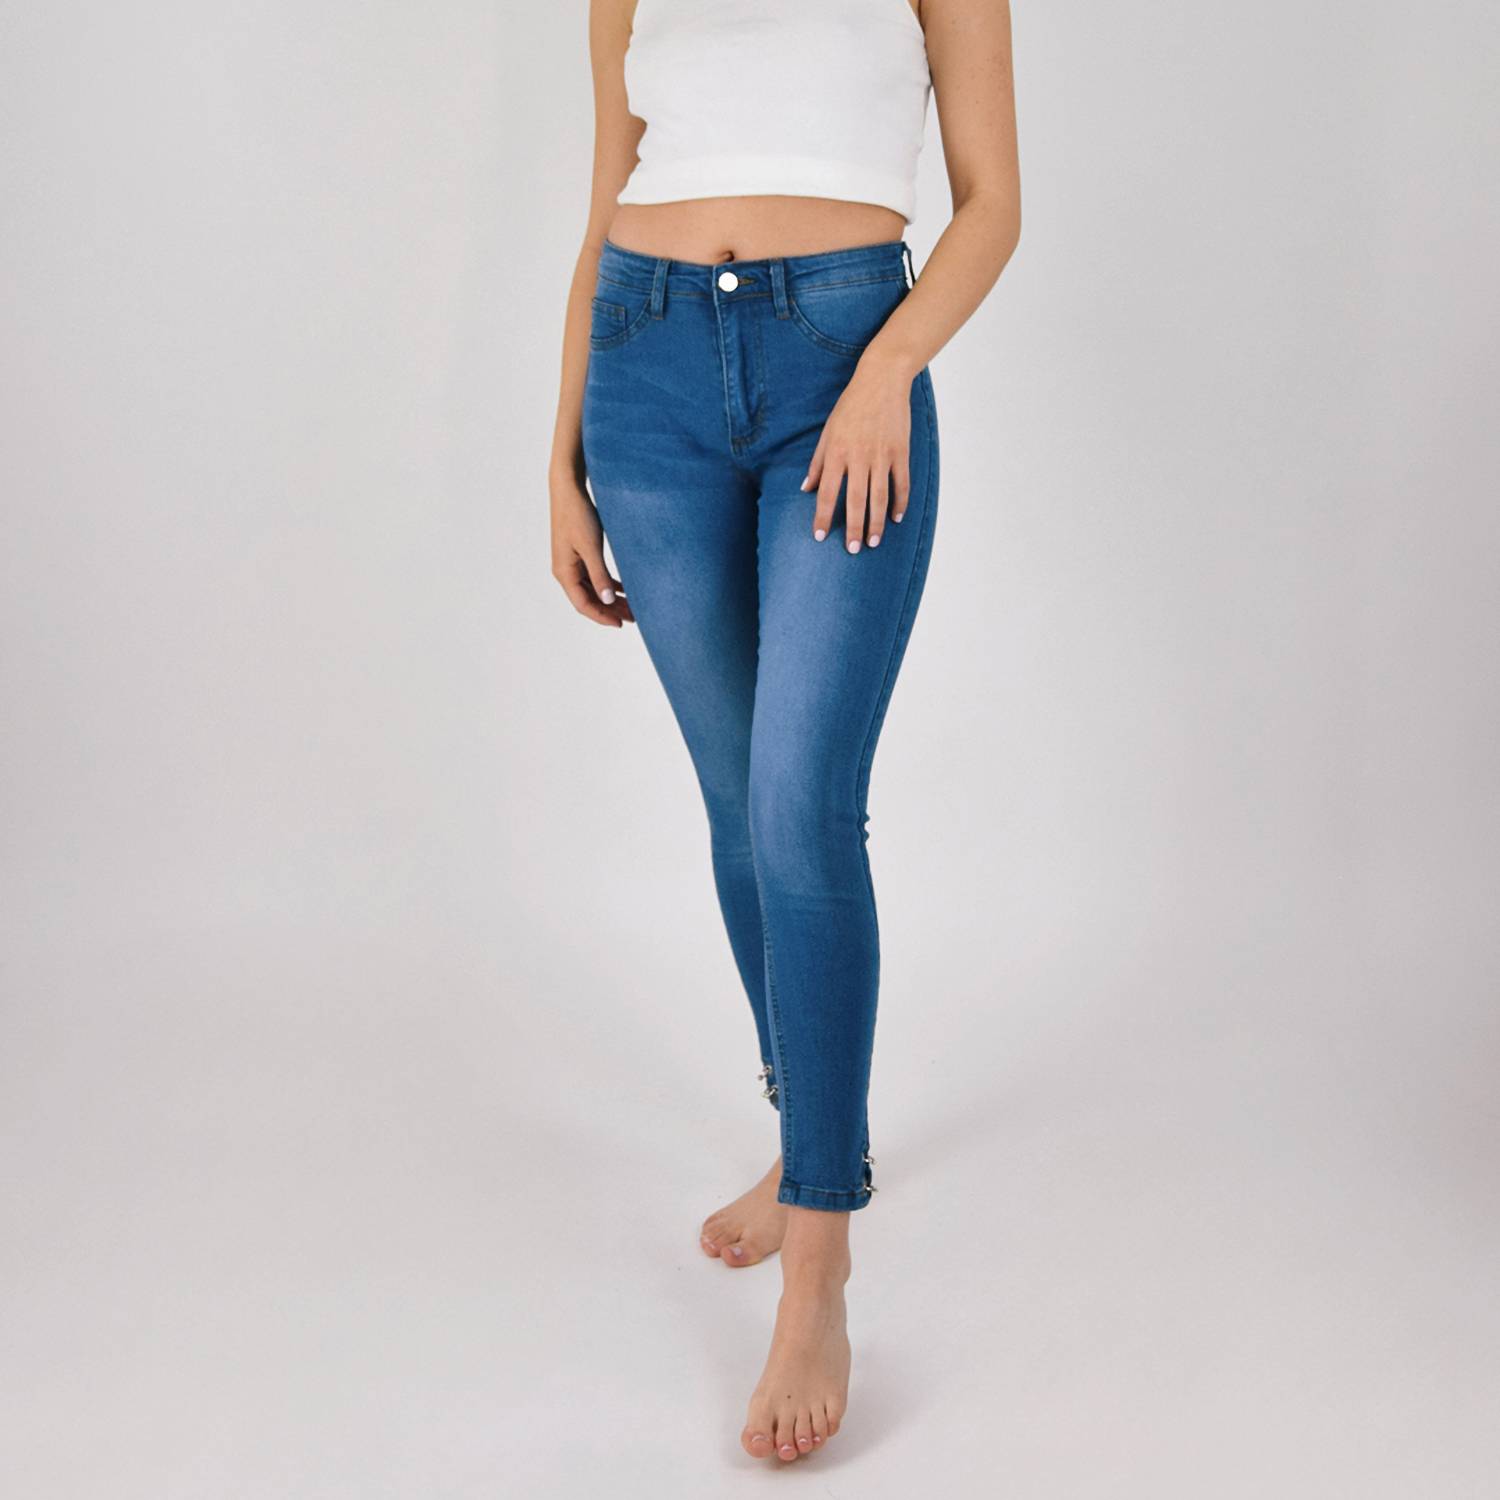 GENERICO Jeans de mujer focalizado con aplicaciones Msco Jeans